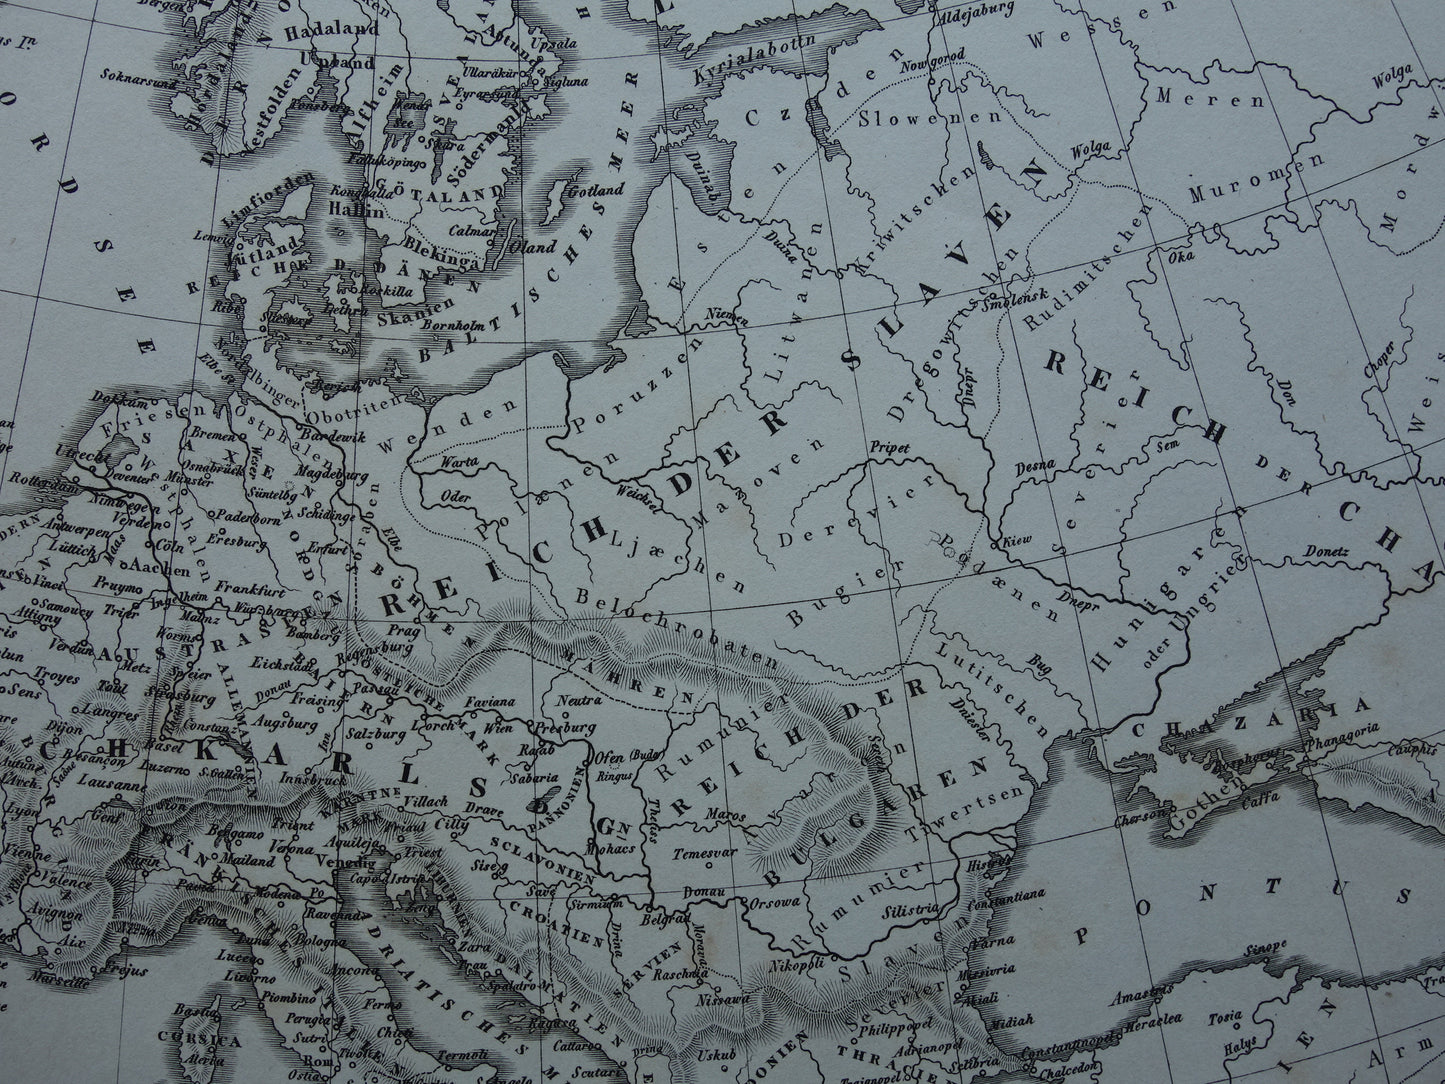 Antieke kaart van EUROPA tijdens Karel de Grote 170+ jaar oude landkaart van continent uit 1849 - originele vintage historische kaarten Rijk Carolus Magnus